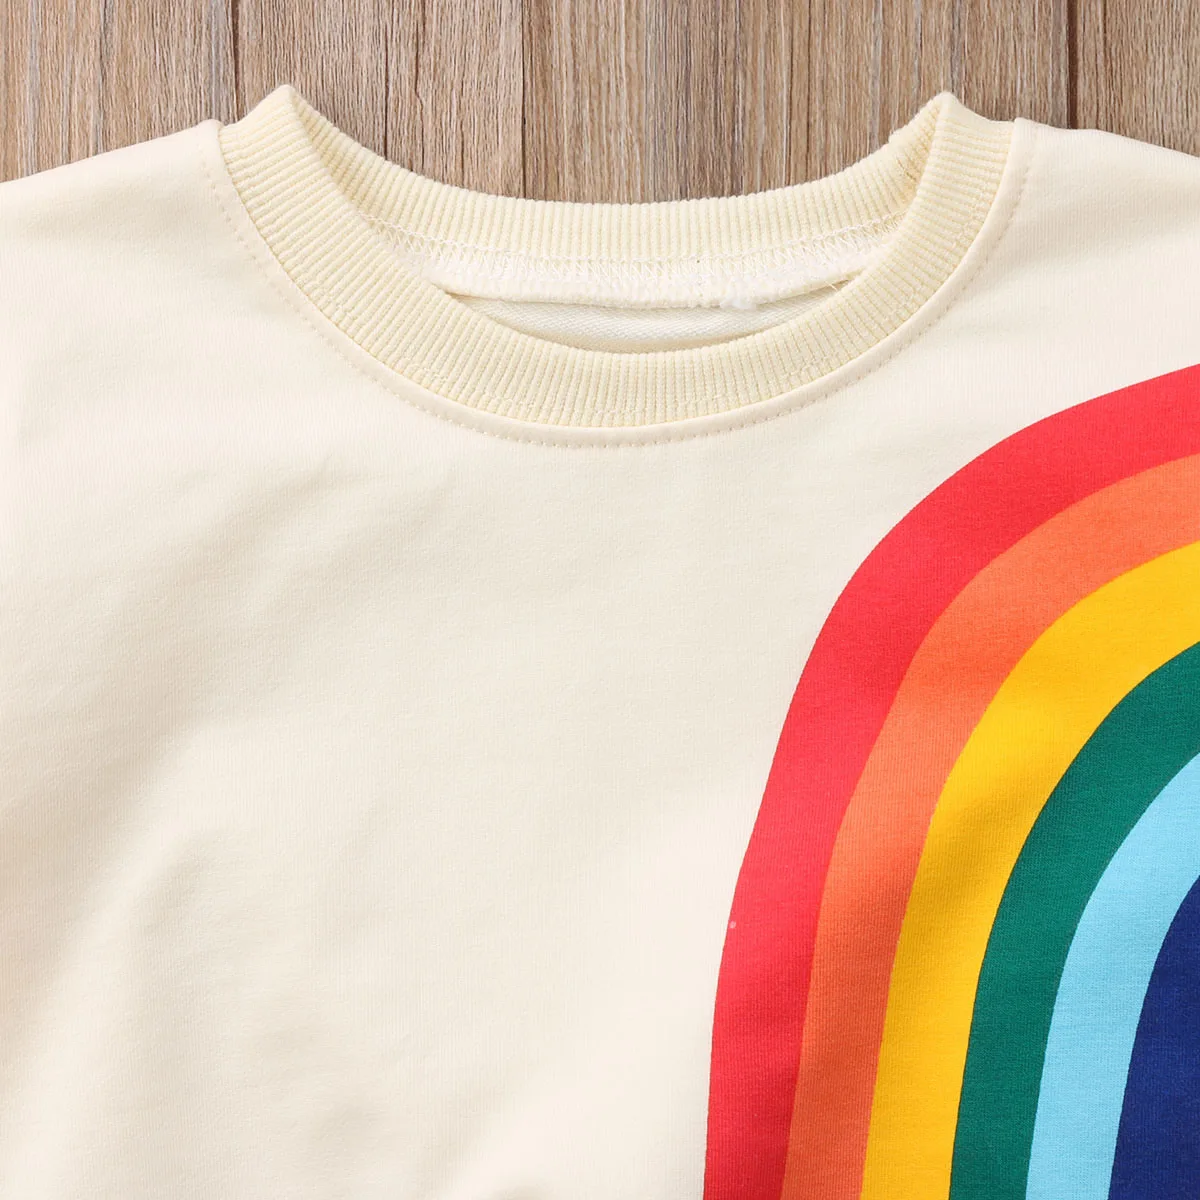 Модная детская футболка с принтом радуги и солнца для маленьких девочек, одежда, хлопковая блузка, свитер, свитер, кардиган